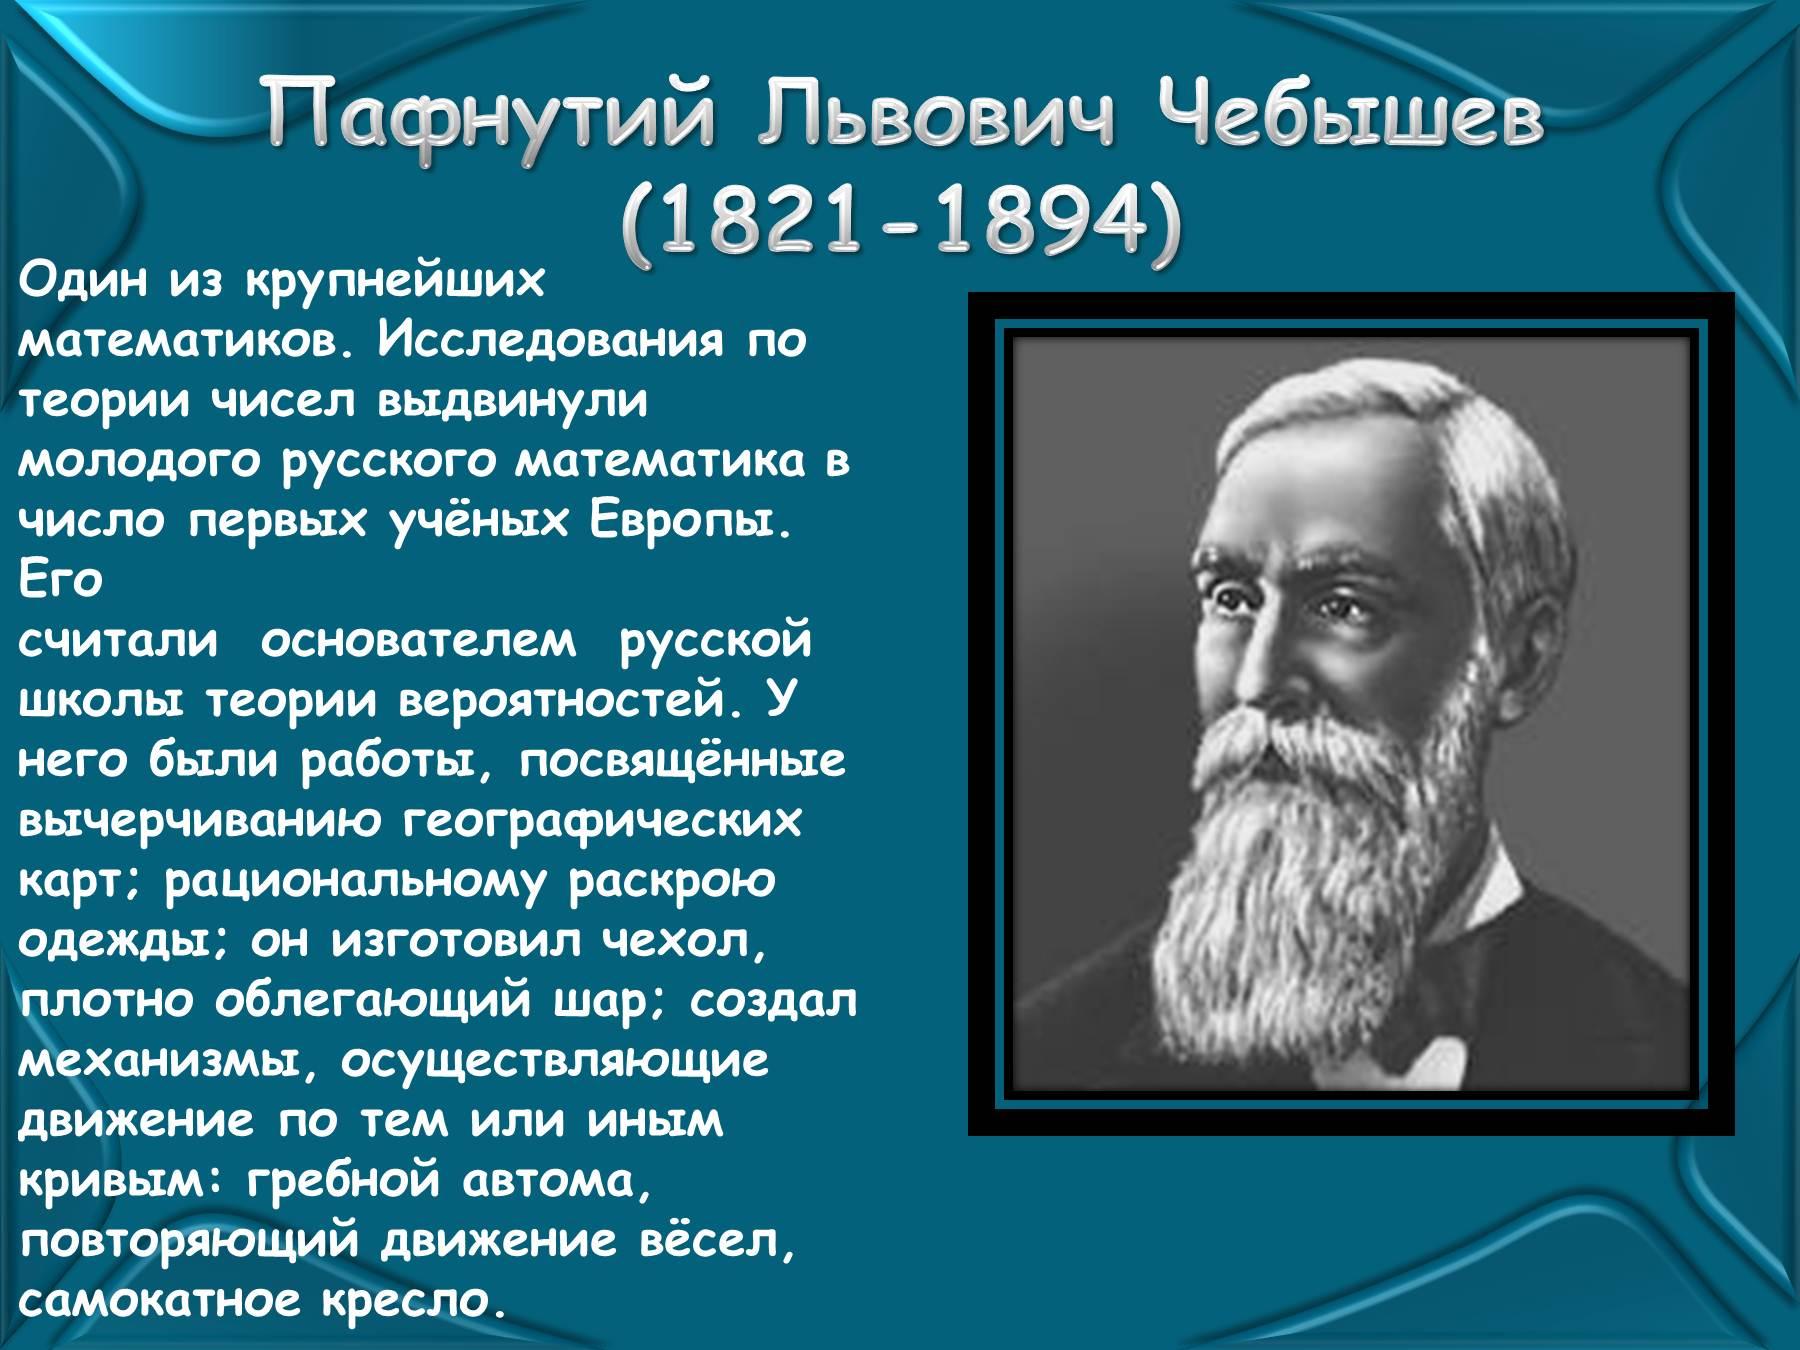 Великие русские ученые Пафнутий Чебышев